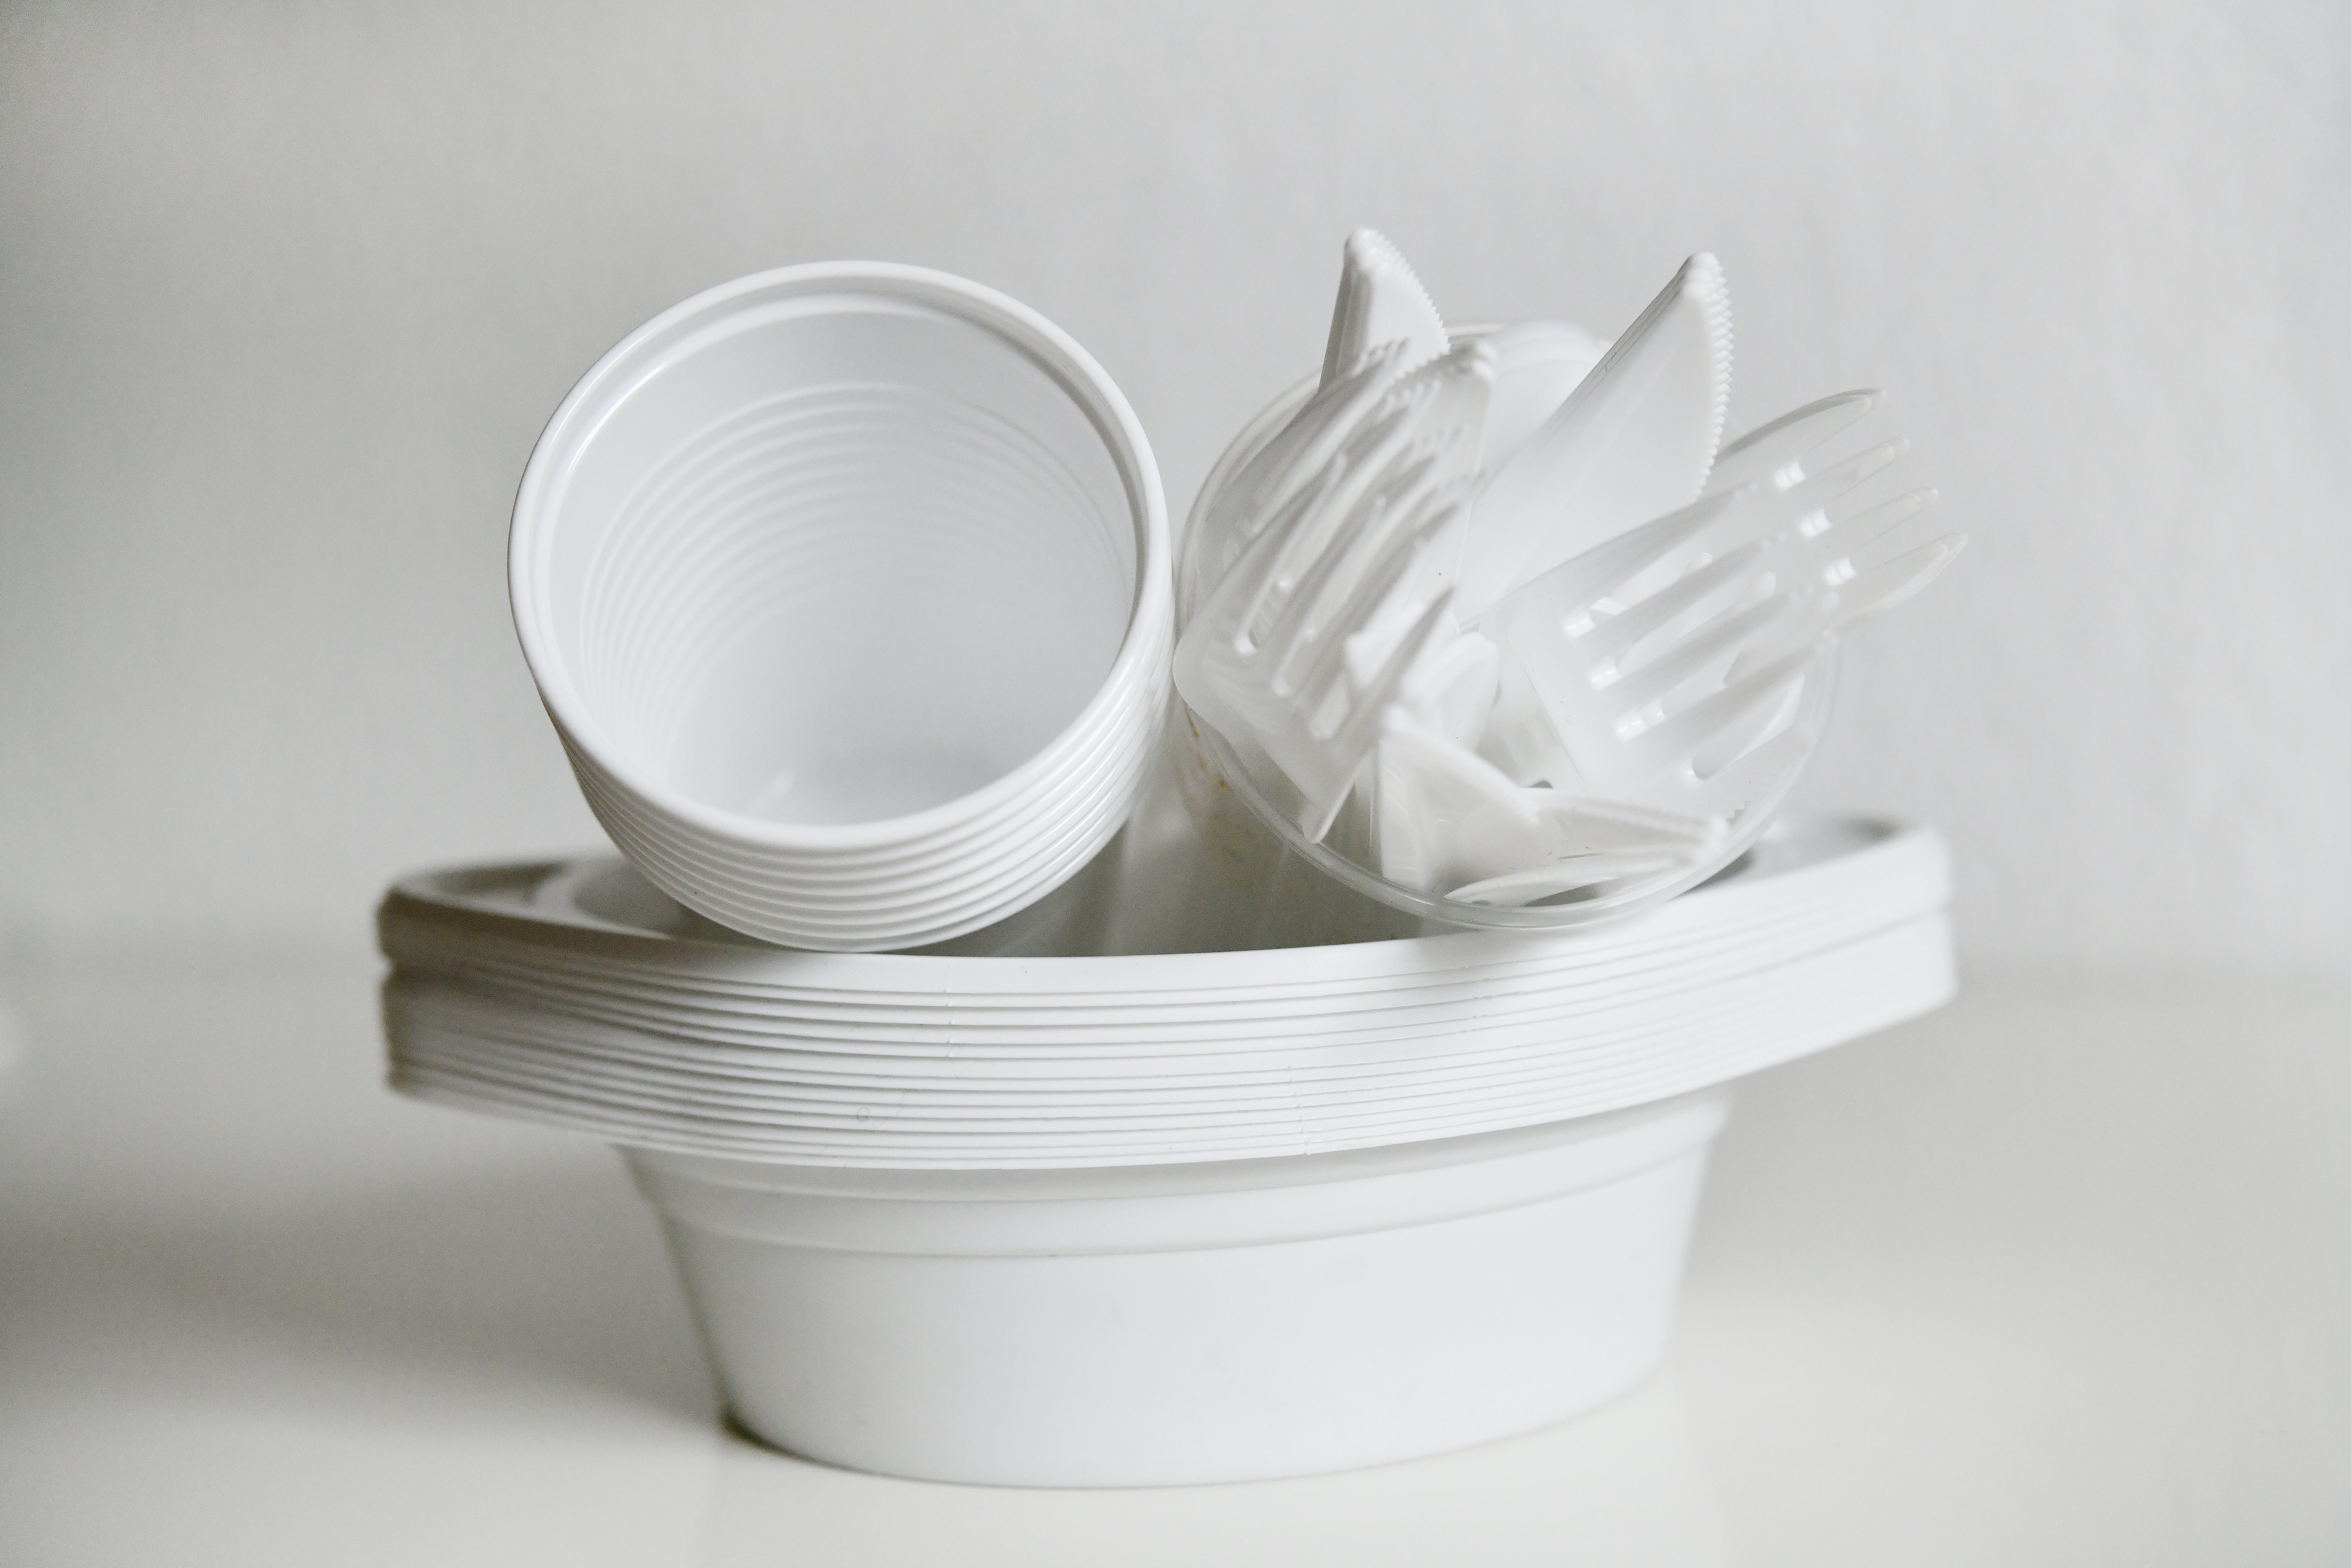 Купить одноразовую посуду пластиковую. Пластиковая посуда. Посуда одноразовая пластиковая. Красивая пластиковая посуда. Пластмассовая разовая посуда.